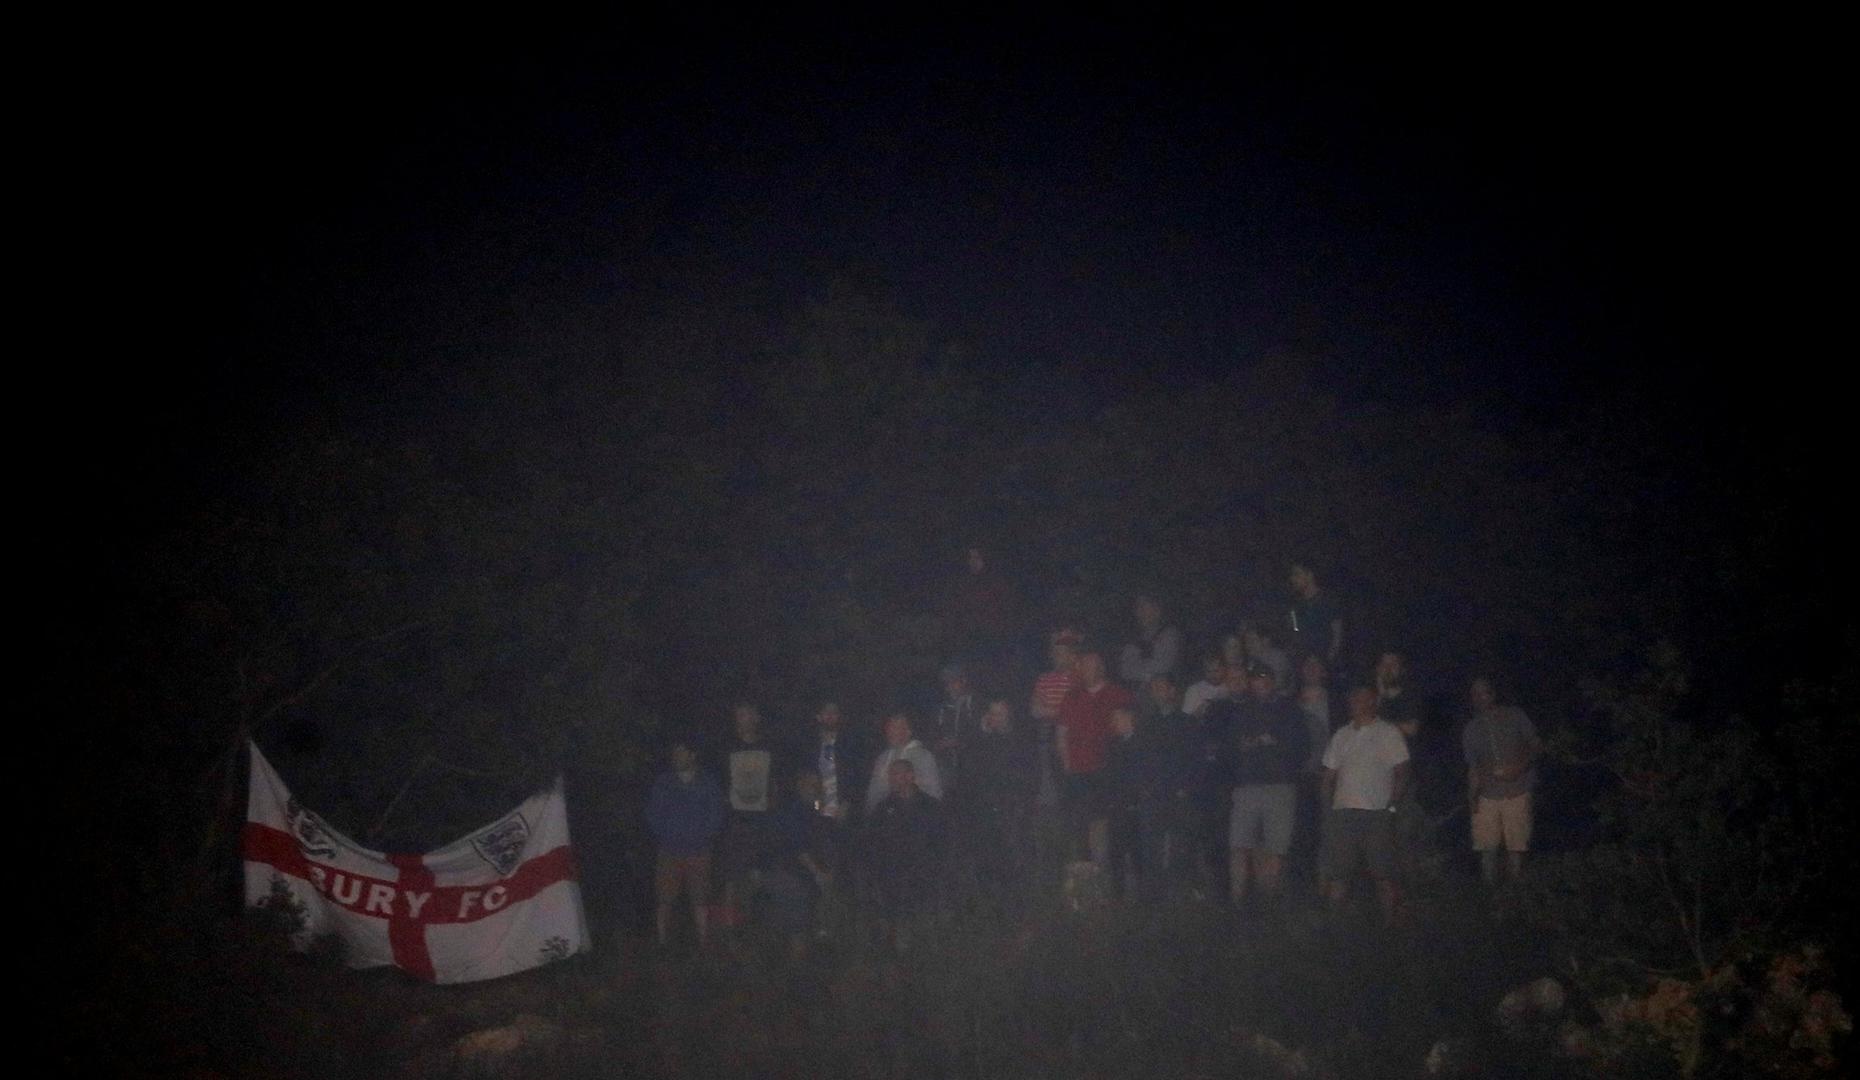 No, engleski navijači koji su stigli u Rijeku su se snašli te su utakmicu gledali s obližnjeg brda s kojeg se pružao dobar pogled na teren.

